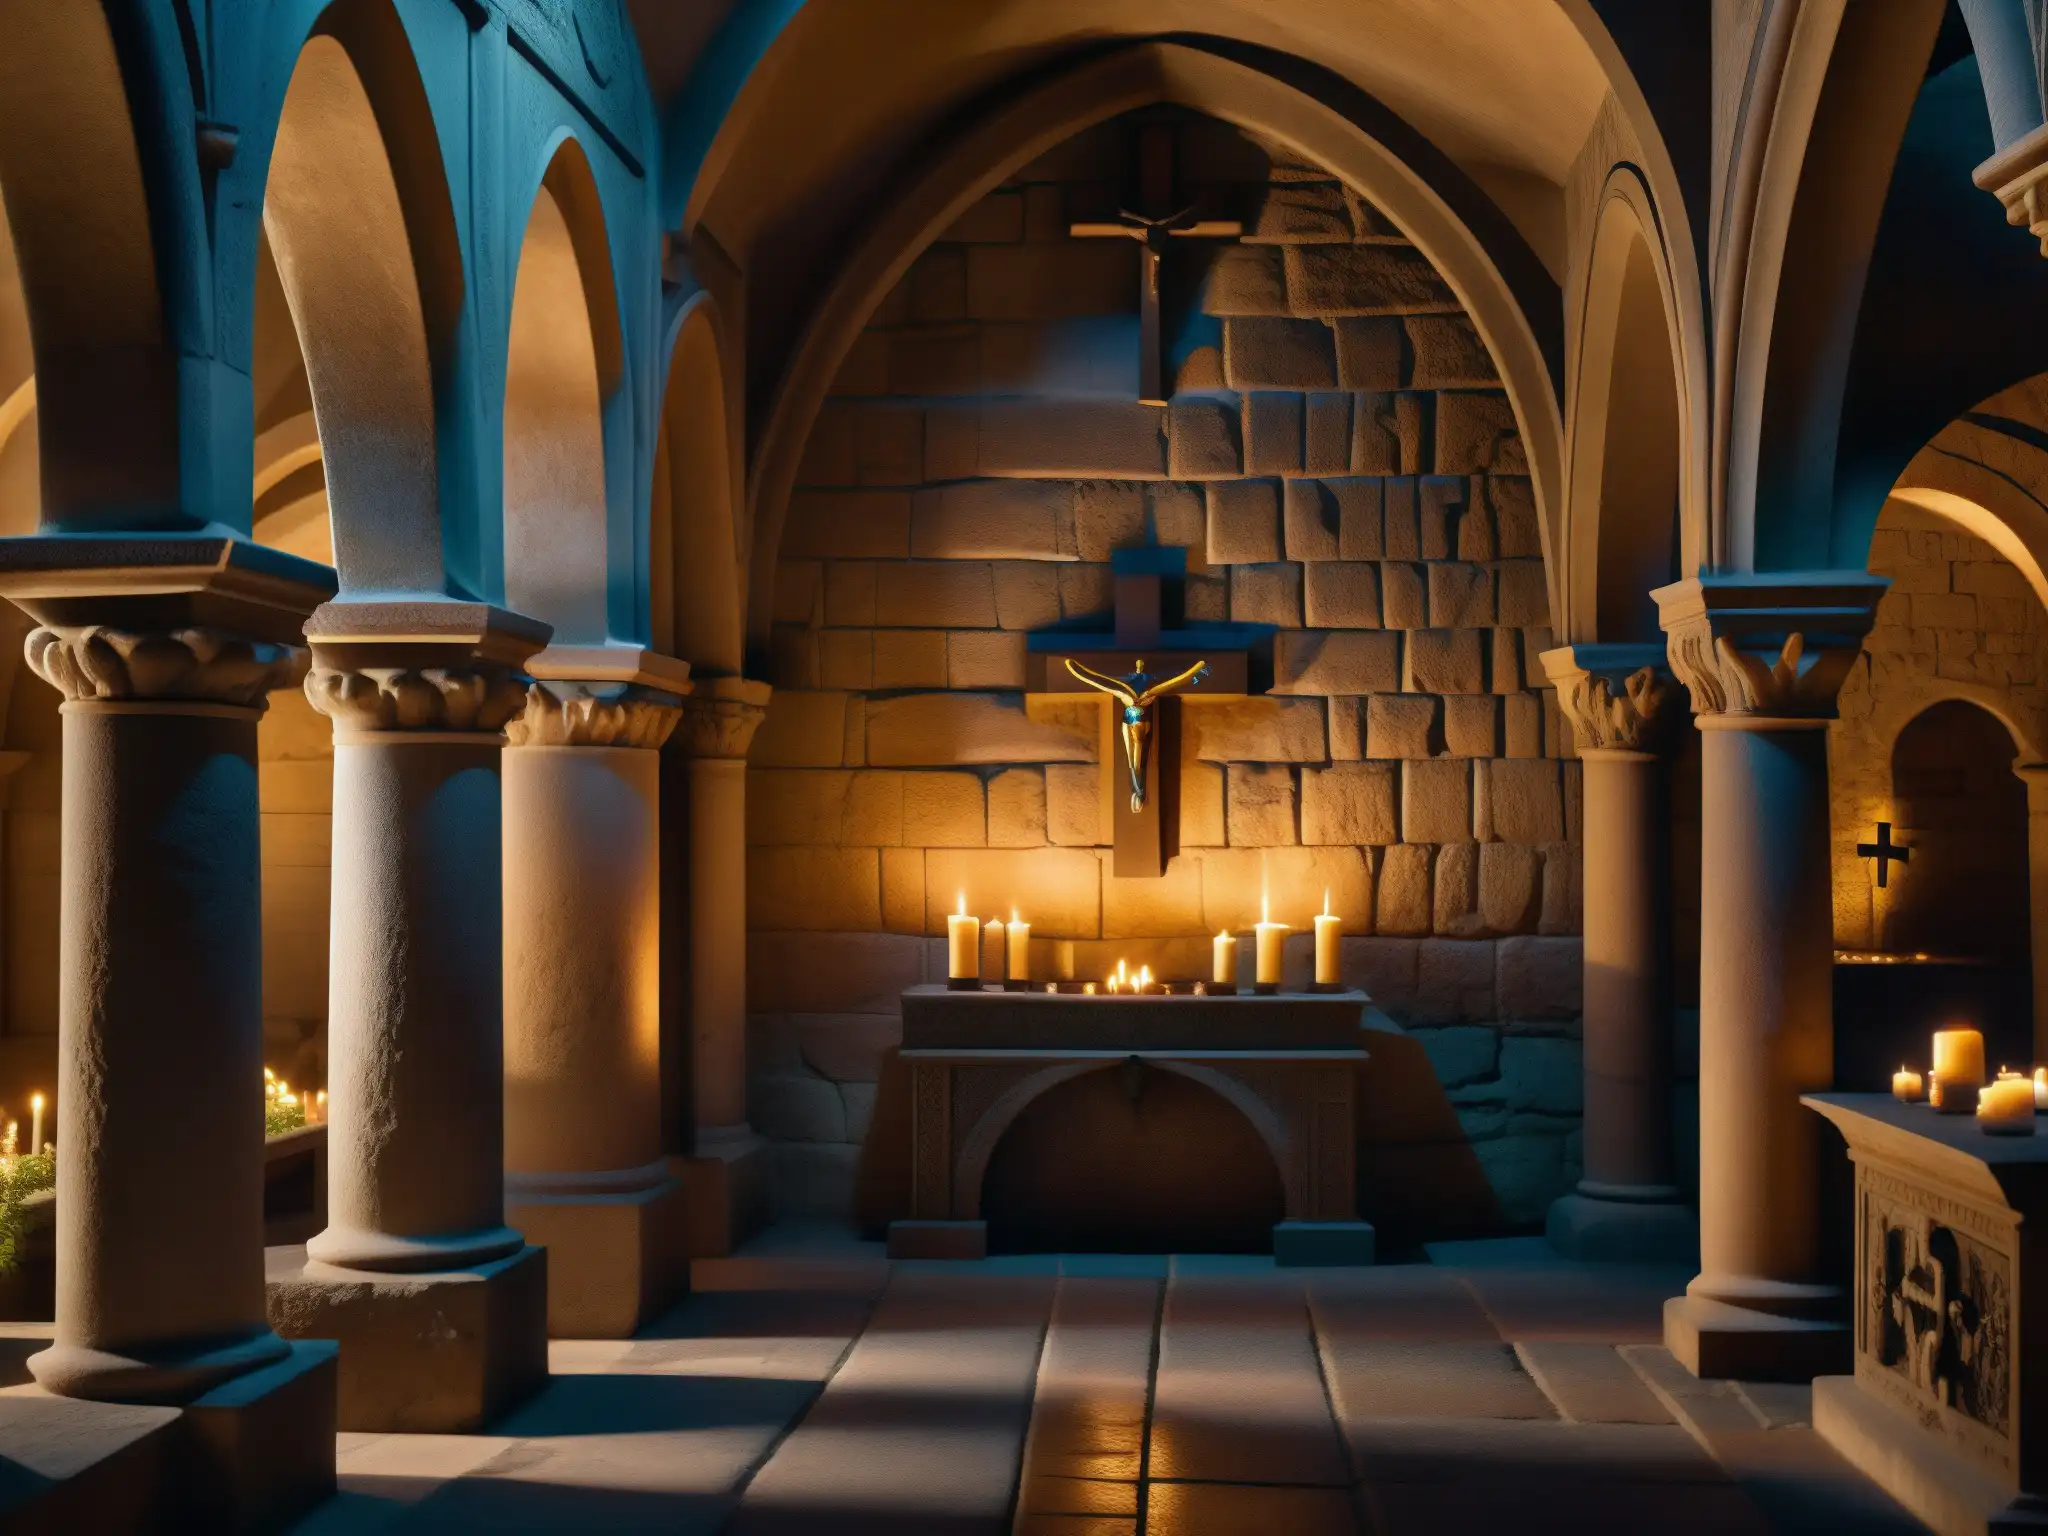 En la cripta medieval, tumbas cristianas antiguas con cruces ornamentadas y luz de velas, evocando solemnidad y misterio